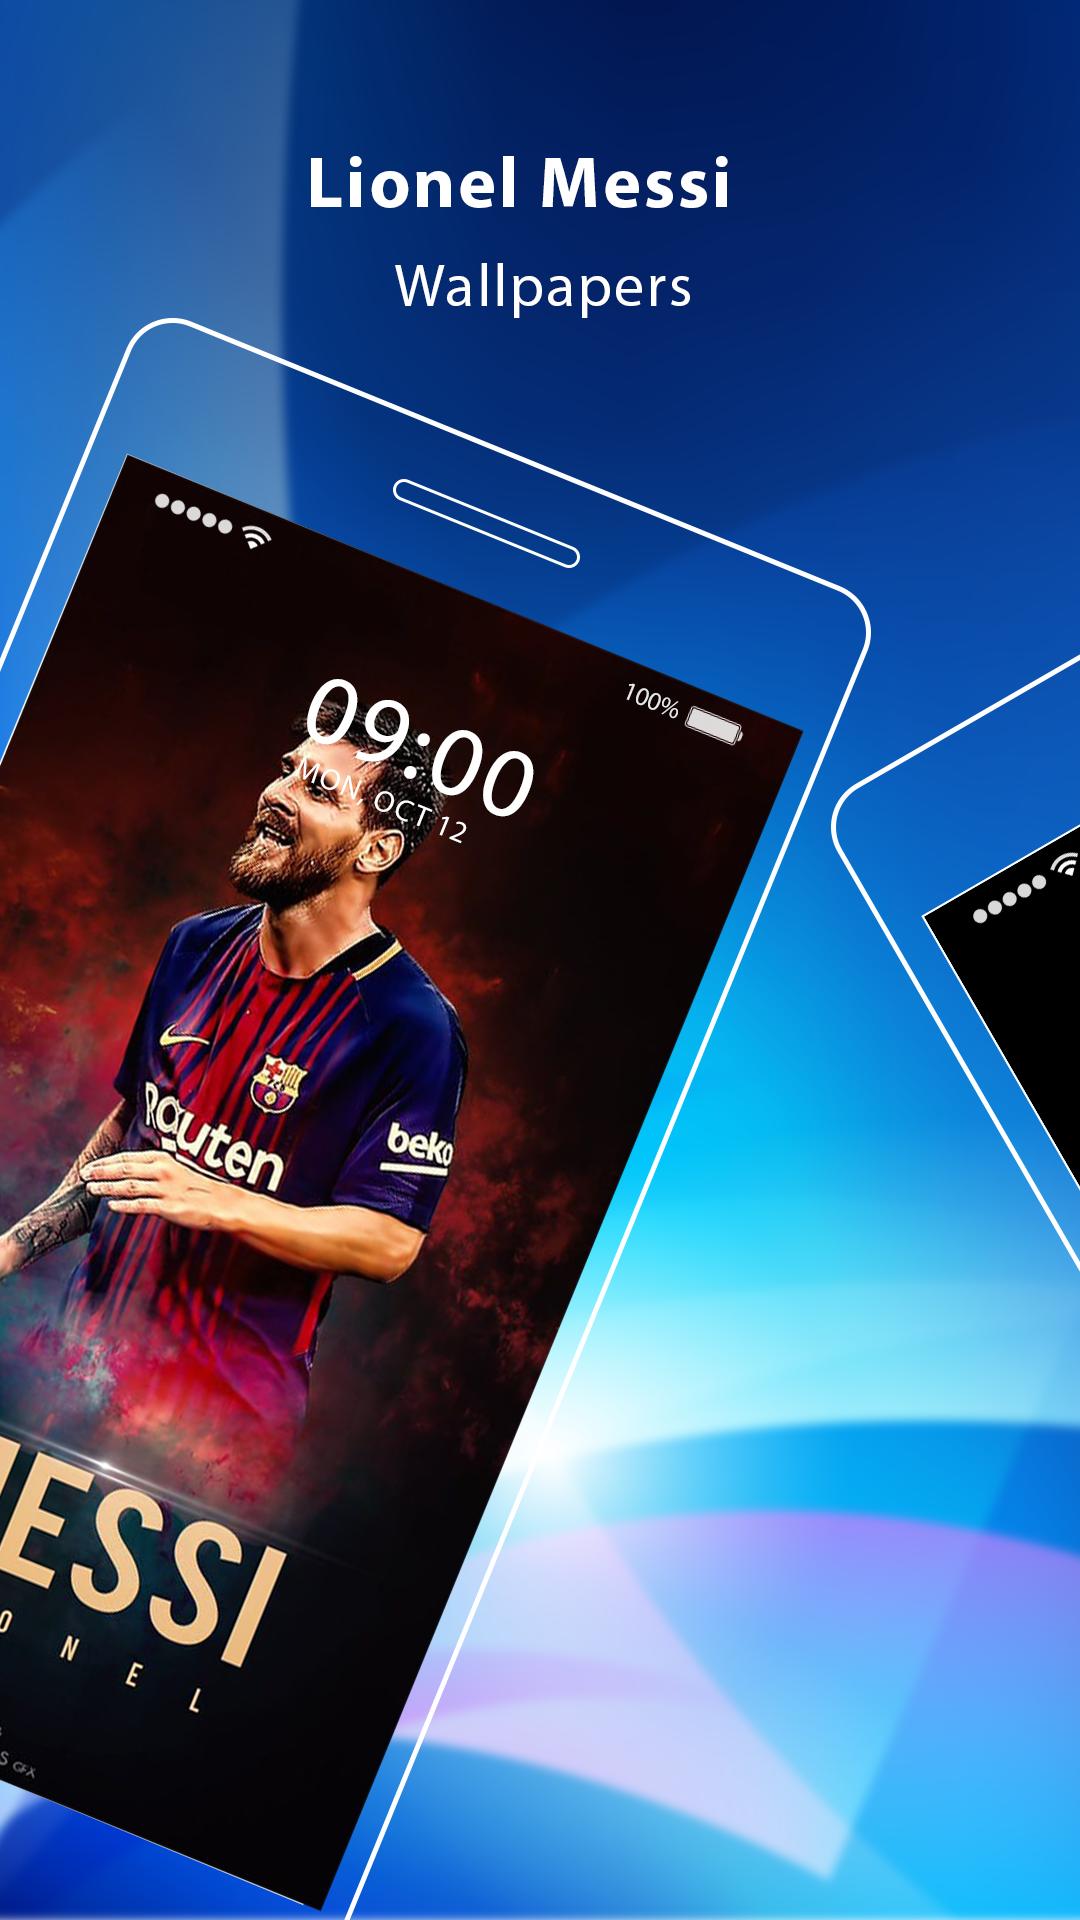 Hãy cập nhật với những bộ hình nền Lionel Messi Wallpaper HD mới nhất và đẹp nhất để tôn vinh sự nghiệp và tài năng của siêu sao bóng đá hàng đầu thế giới. Đây chắc chắn là một điều không thể bỏ qua đối với những fan Messi.